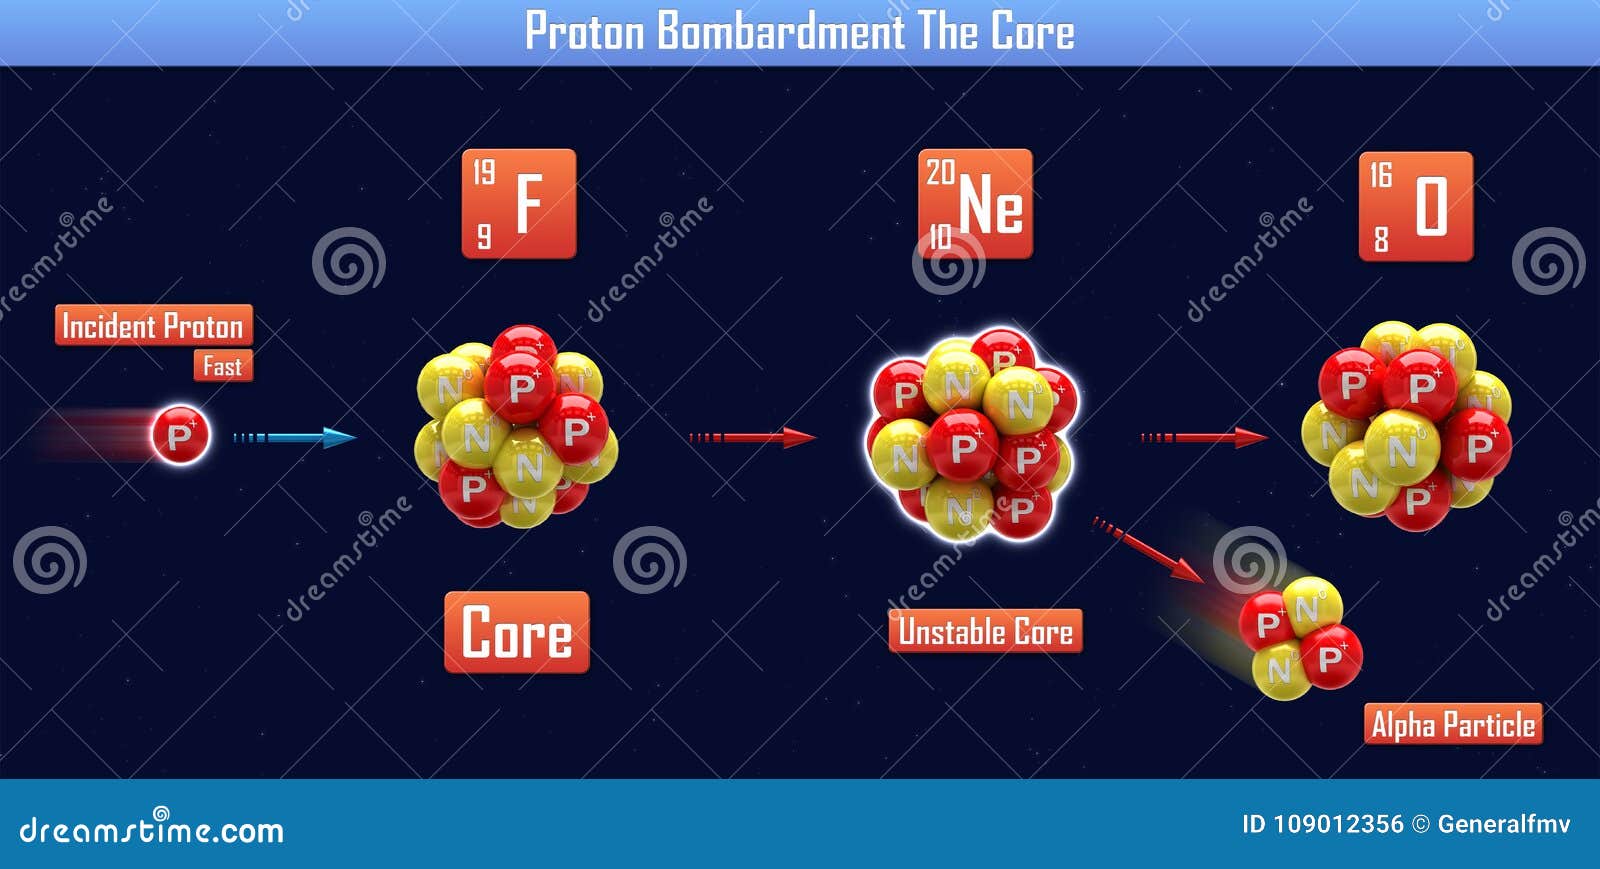 proton bombardment the core